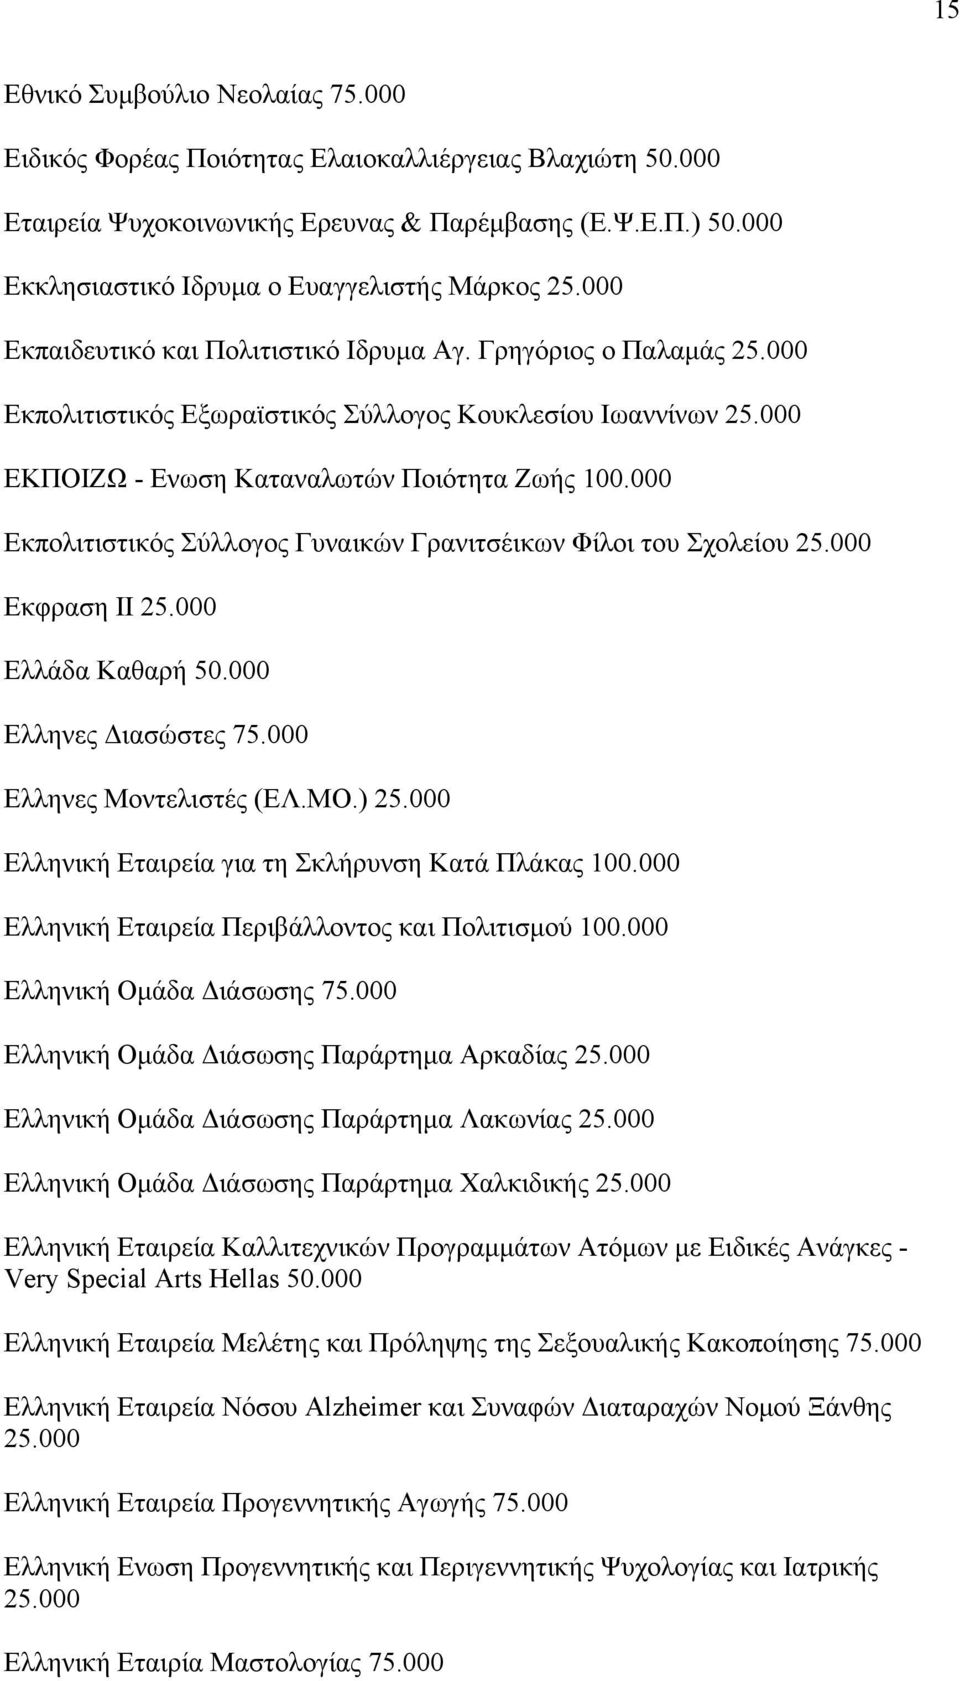 000 ΕΚΠΟΙΖΩ - Ενωση Καταναλωτών Ποιότητα Ζωής 100.000 Εκπολιτιστικός Σύλλογος Γυναικών Γρανιτσέικων Φίλοι του Σχολείου 25.000 Εκφραση ΙΙ 25.000 Ελλάδα Καθαρή 50.000 Ελληνες Διασώστες 75.